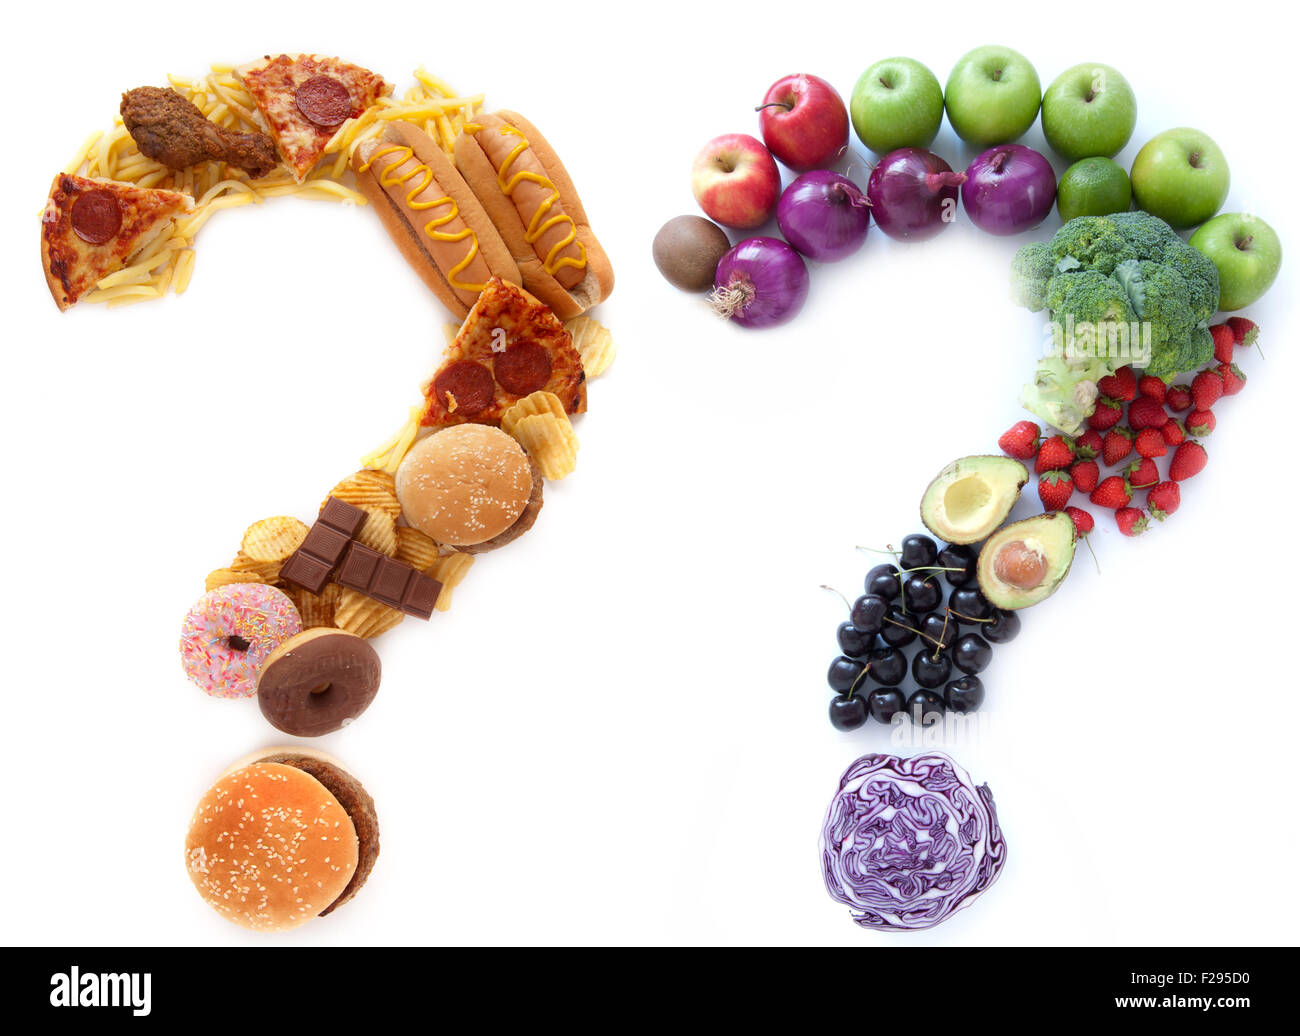 Gesunde und ungesunde Lebensmittelzutaten in eine Form von Fragezeichen neben einander Stockfoto